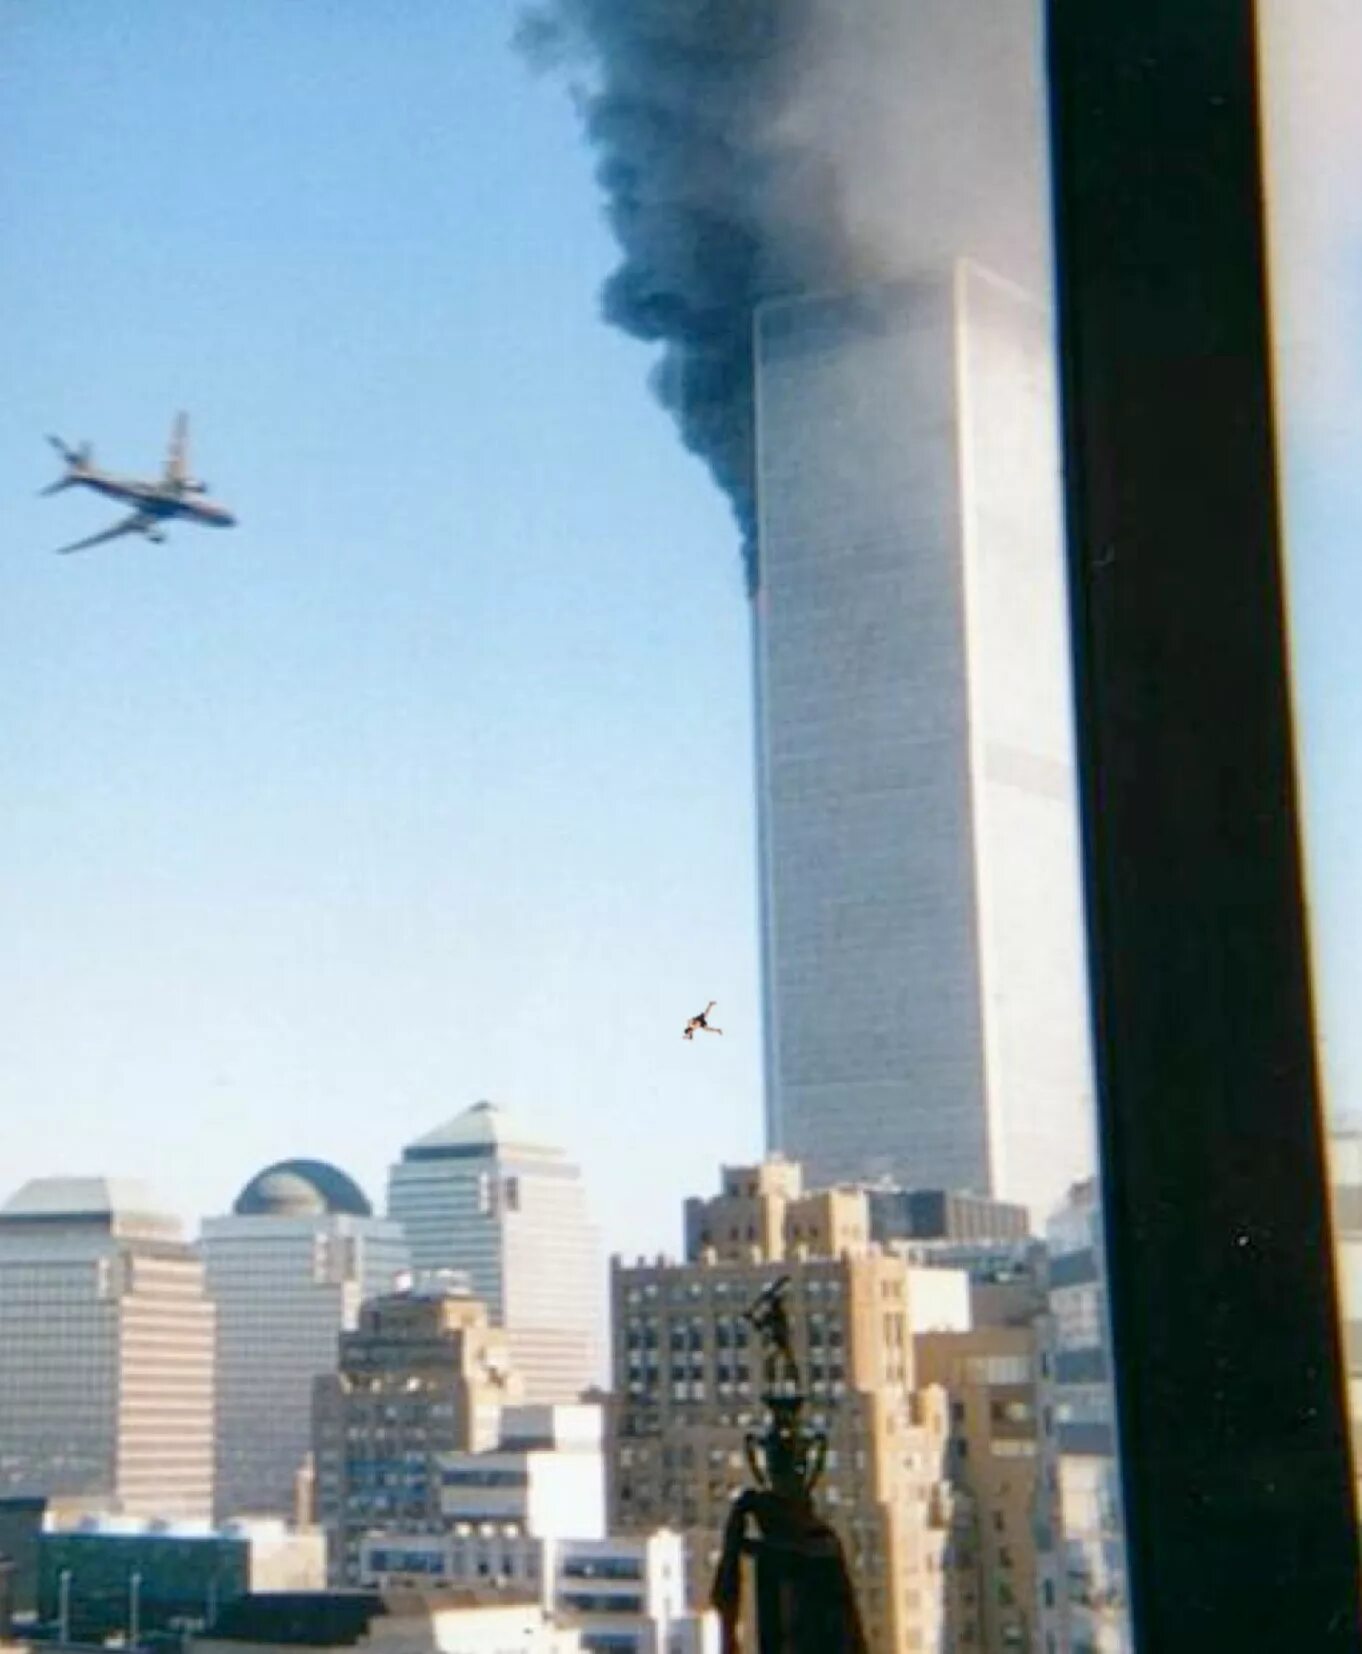 Небоскребы 2001. Всемирный торговый центр в Нью-Йорке 11 сентября. Башни-Близнецы 11 сентября 2001. ВТЦ Нью-Йорк башни Близнецы 2001. 11 Сентября 2001 внутри башен.